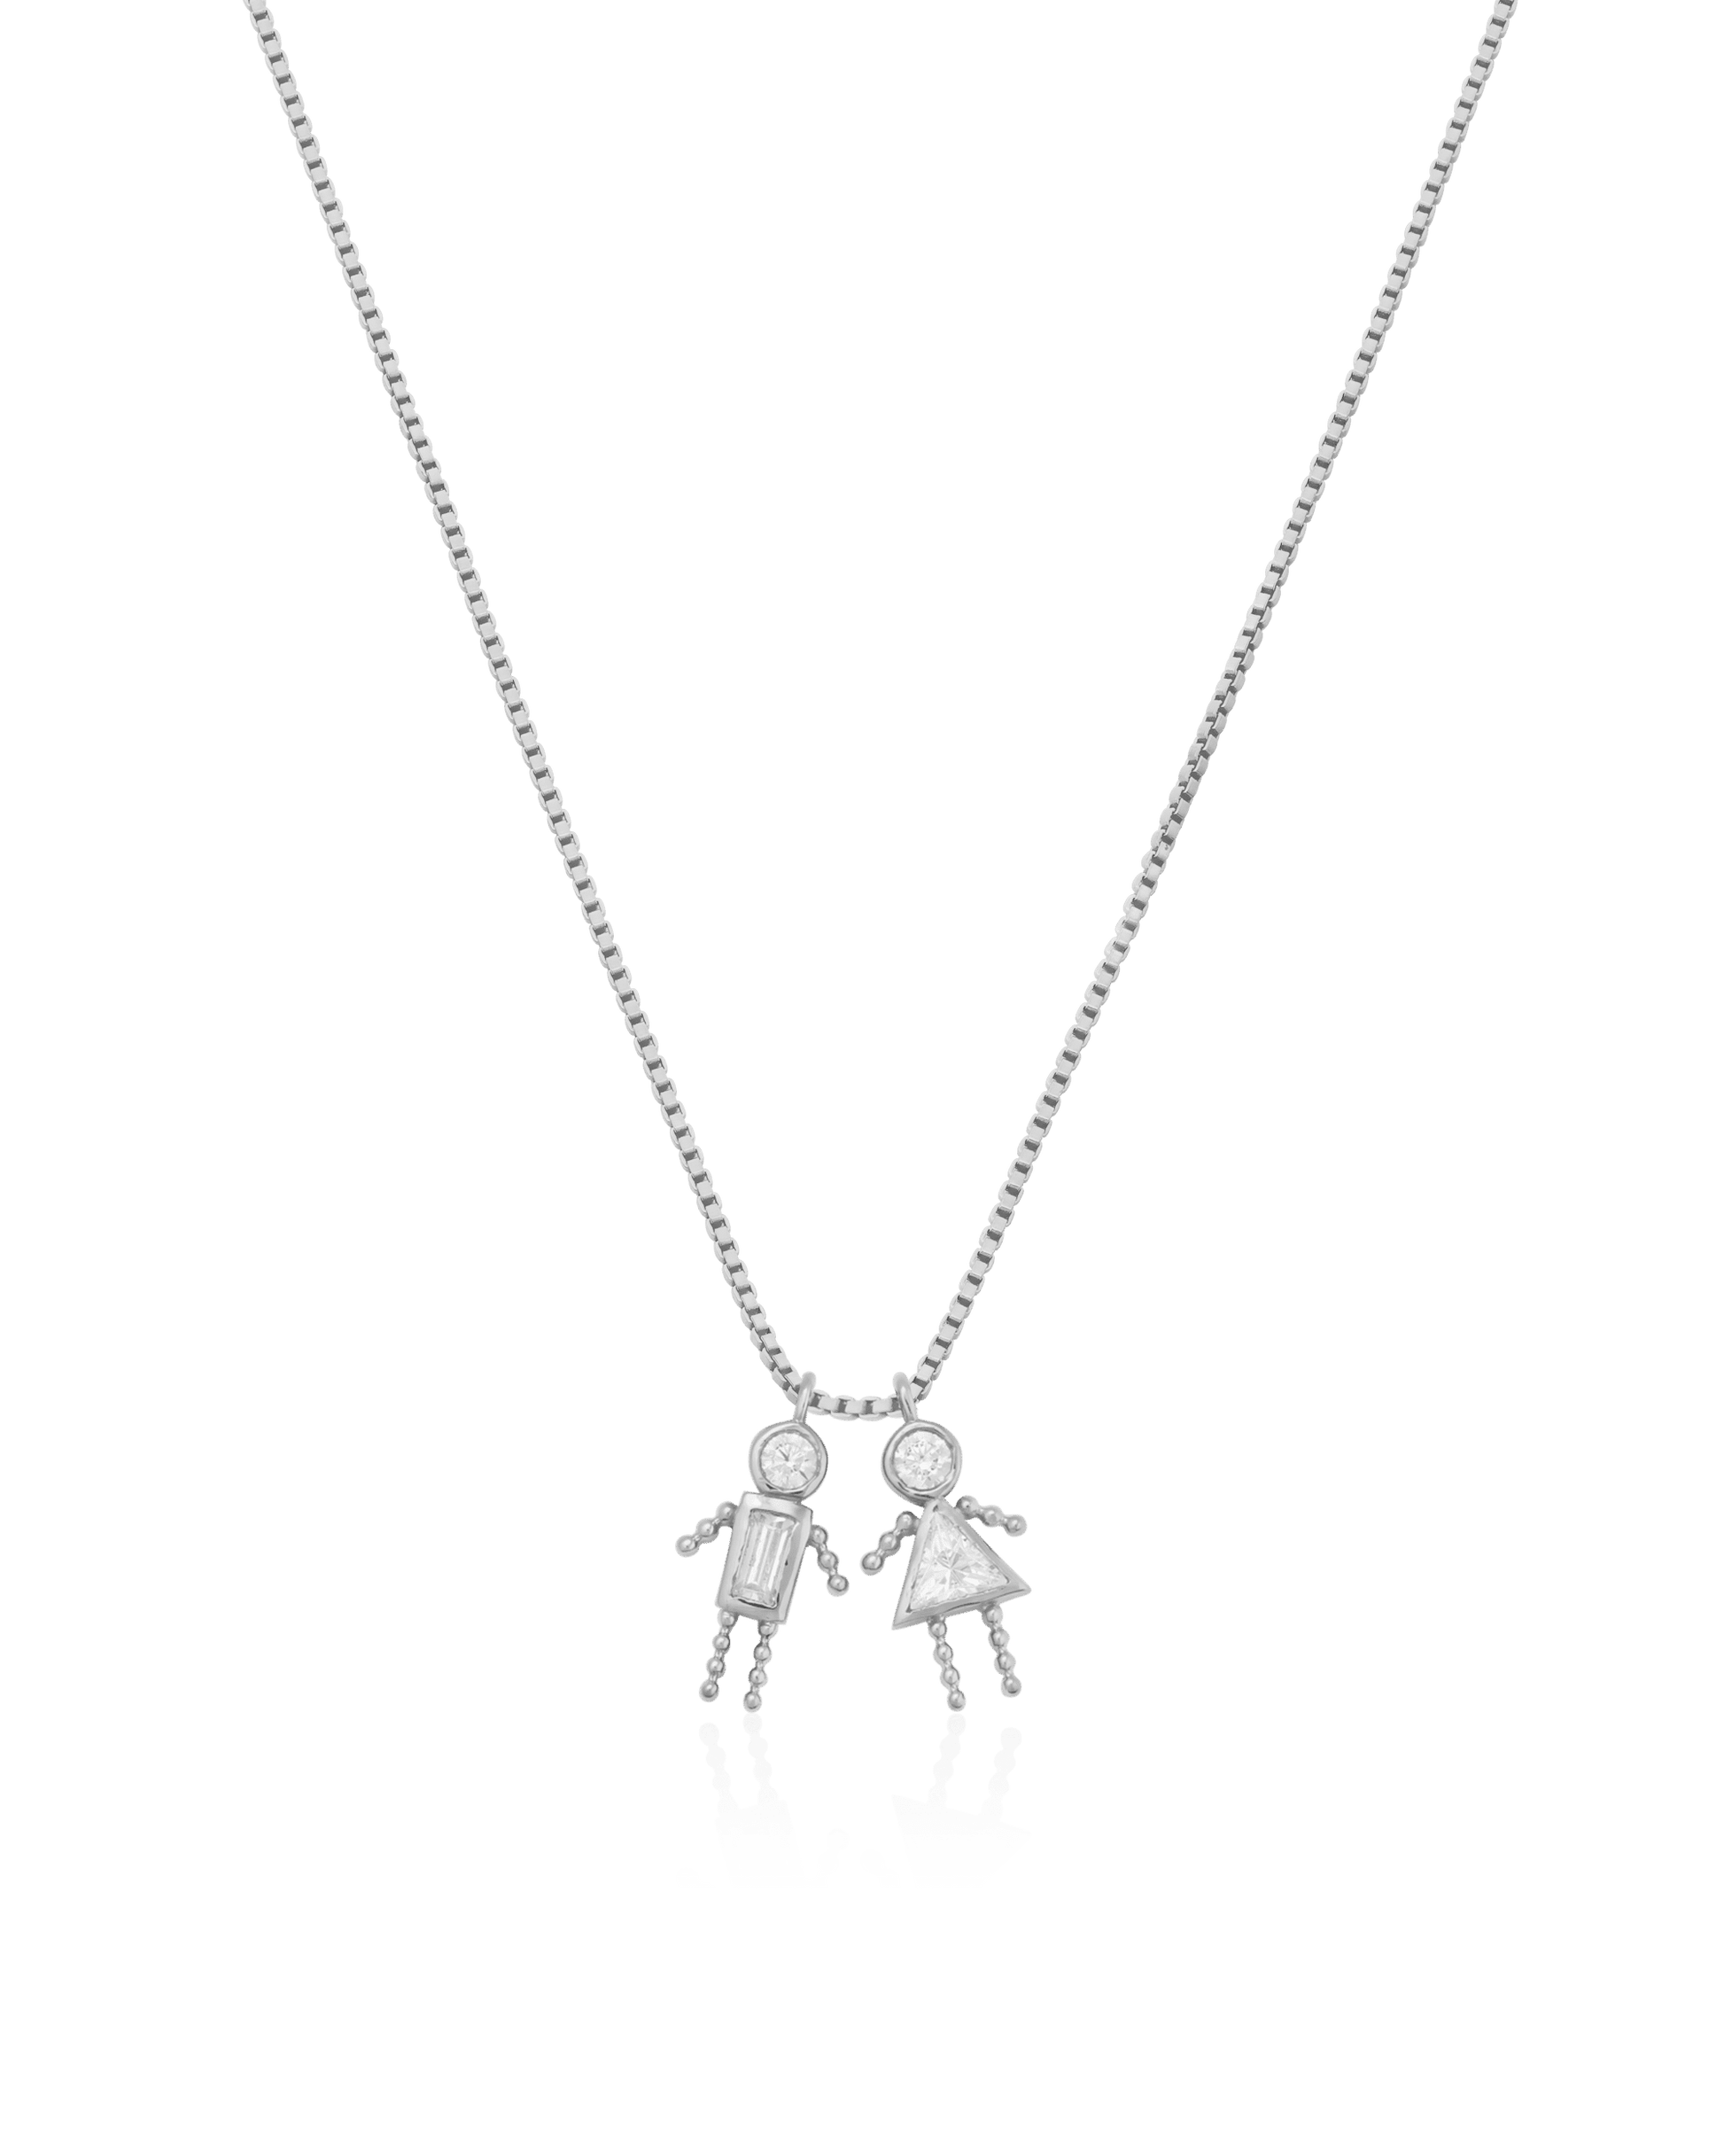 Mini Me Collier - Argent 925 Necklaces magal-dev 1 40cm 